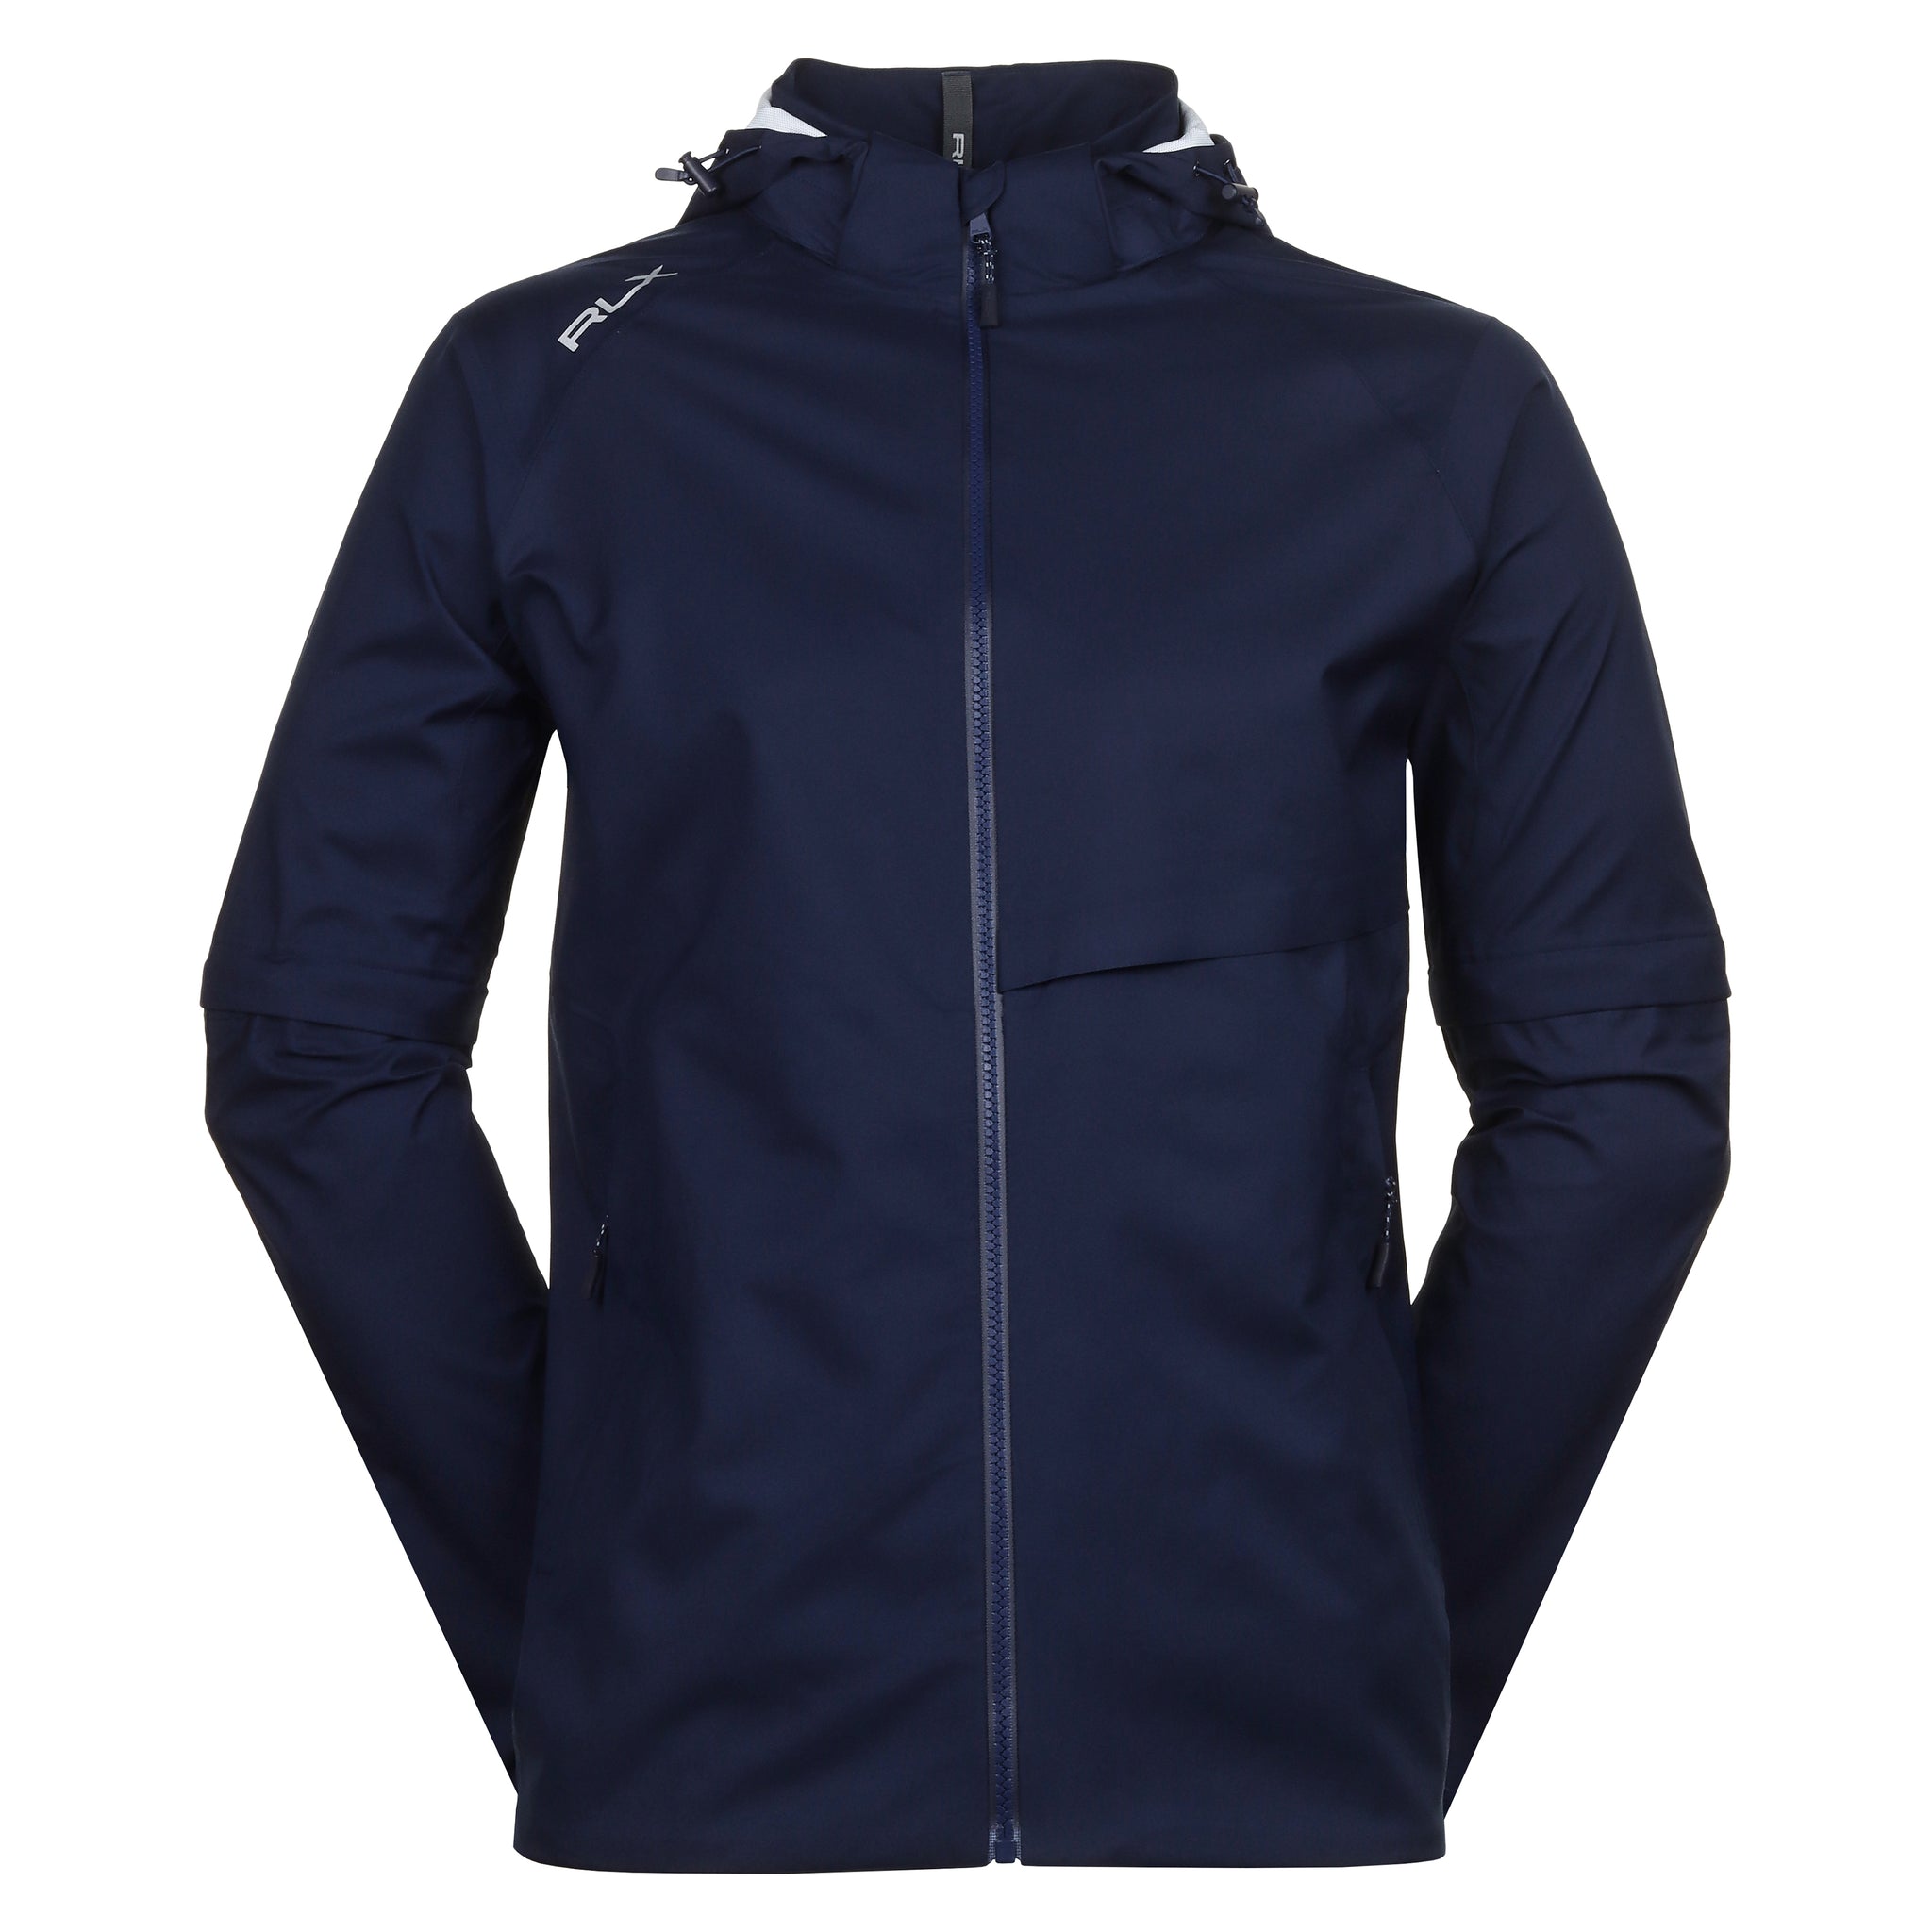 rlx-ralph-lauren-deluge-jacket-785927928-refined-navy-001